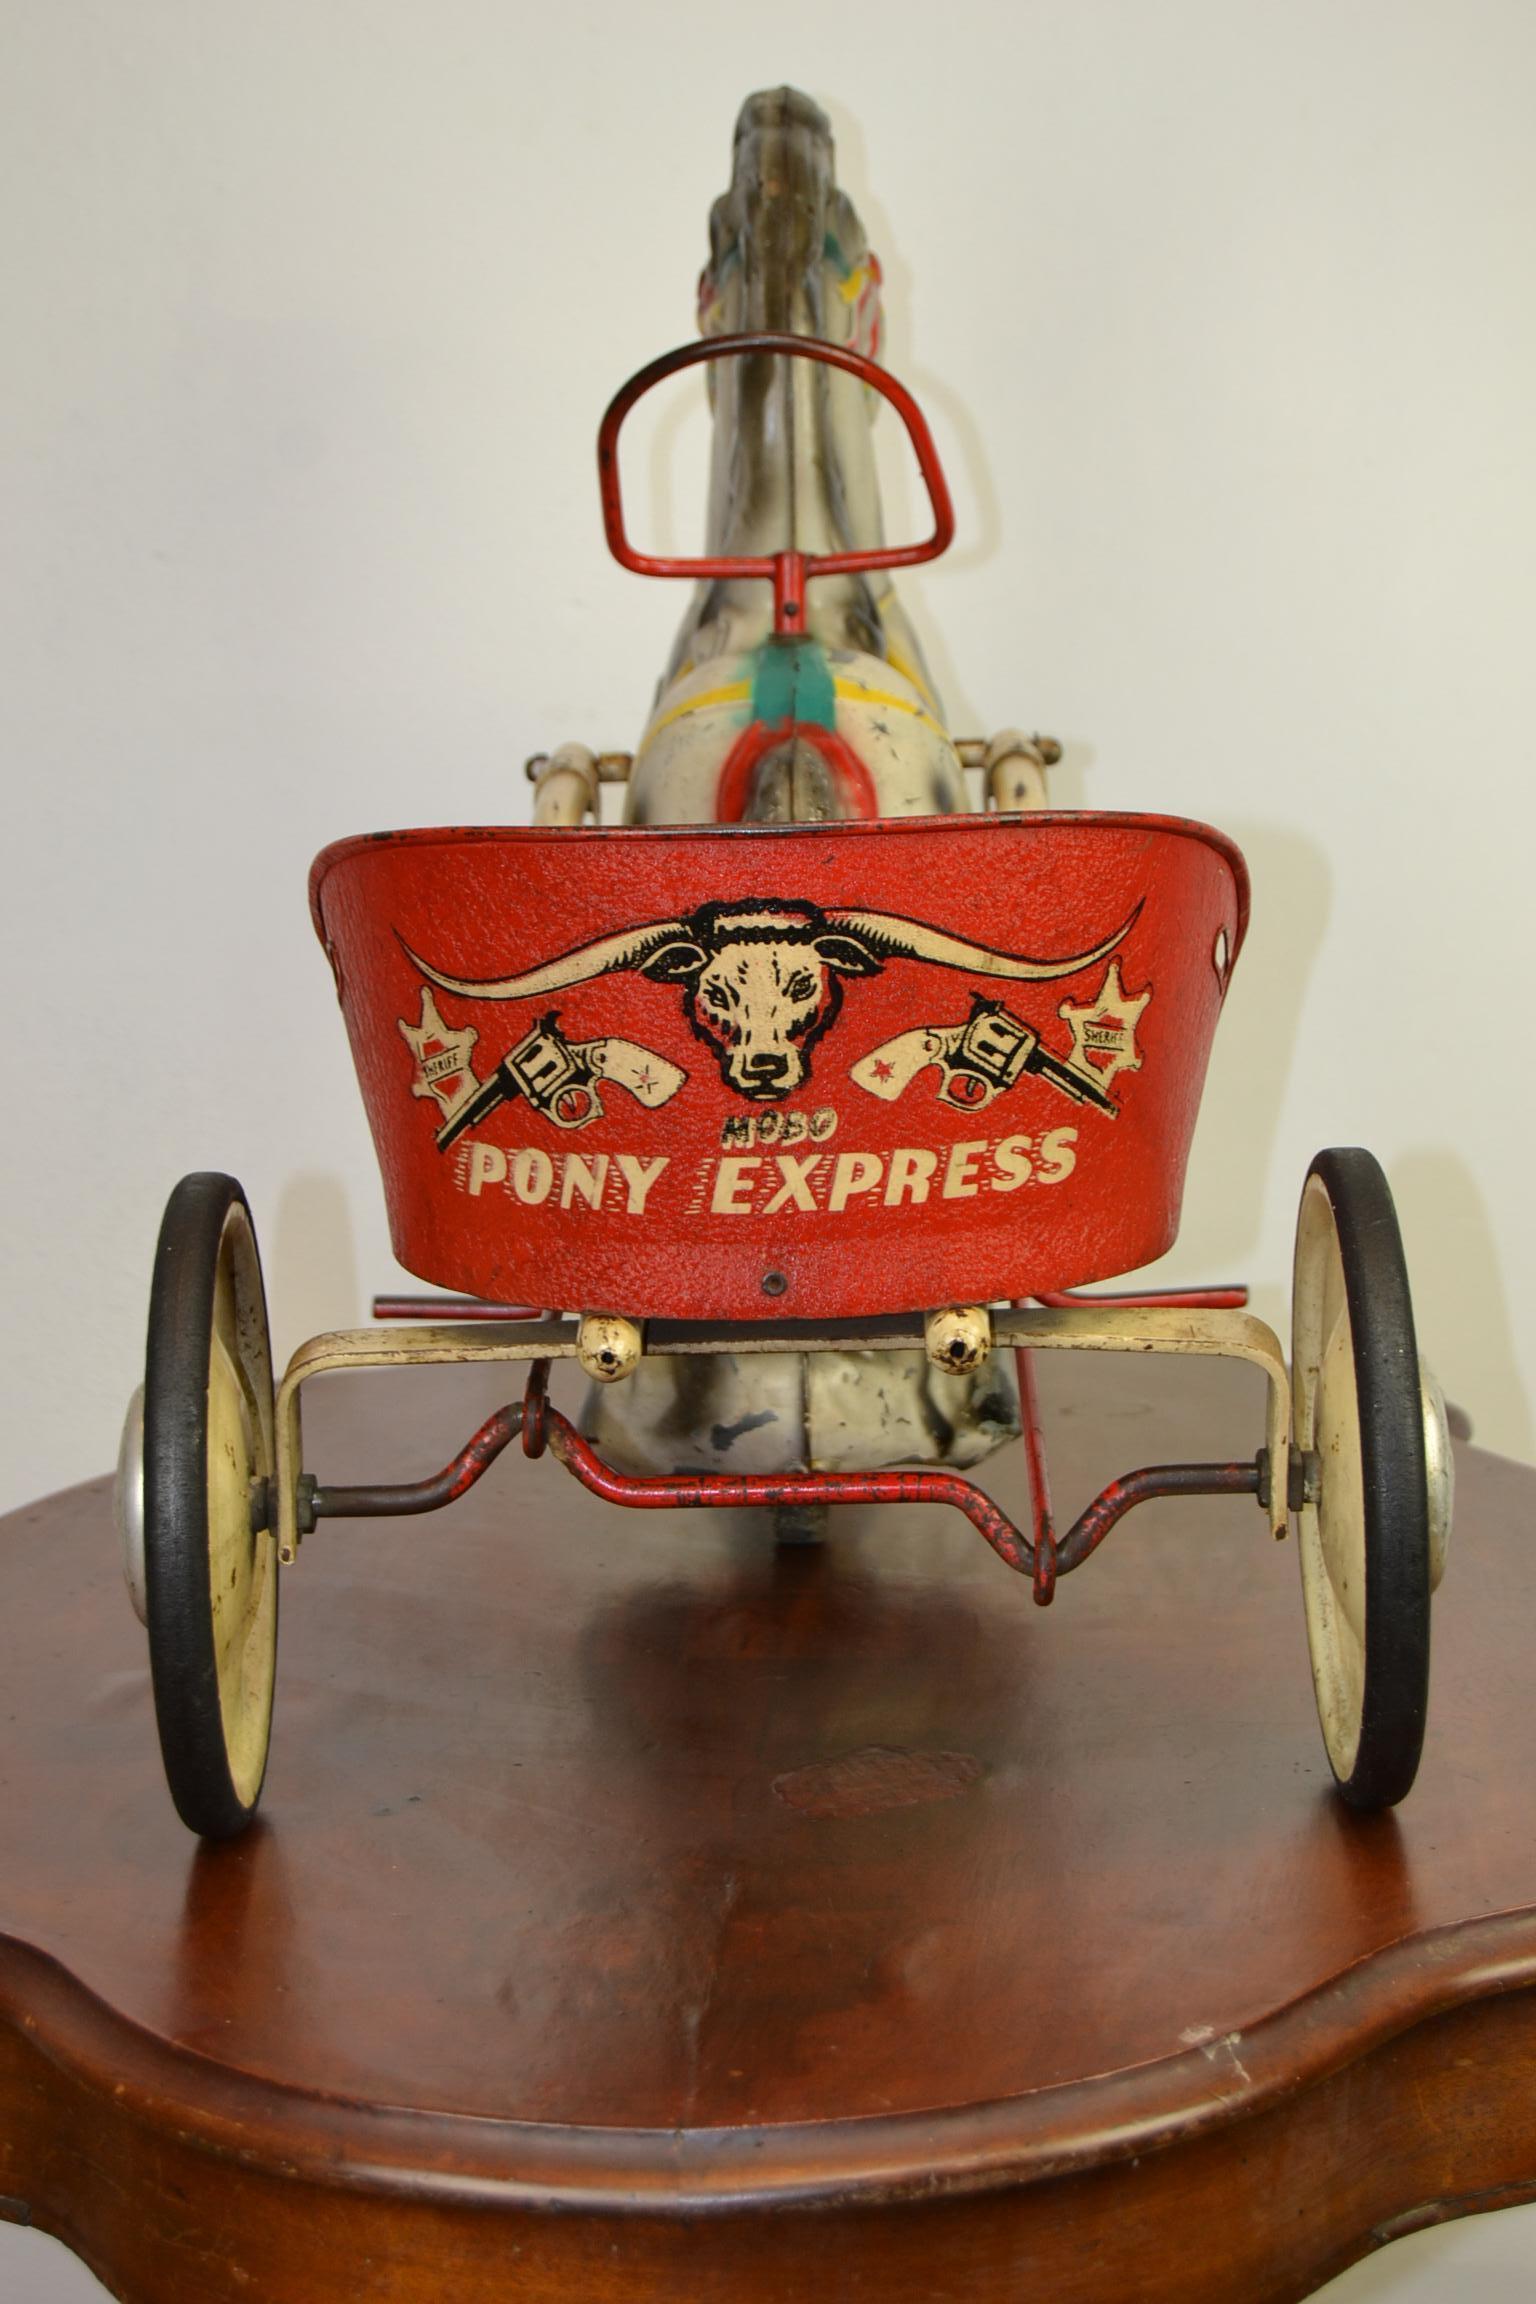 1950er Jahre Vintage Mobo Toys Pony Express Pedal Spielzeug.
Dieser Carrey Anhänger mit Pferd wurde von Sebel Mobo Toy, D. Sebel & co Erith Kent, England hergestellt.
Es ist ein Spielzeug aus gepresstem Stahl mit Pedalen eines niedlichen Ponys mit